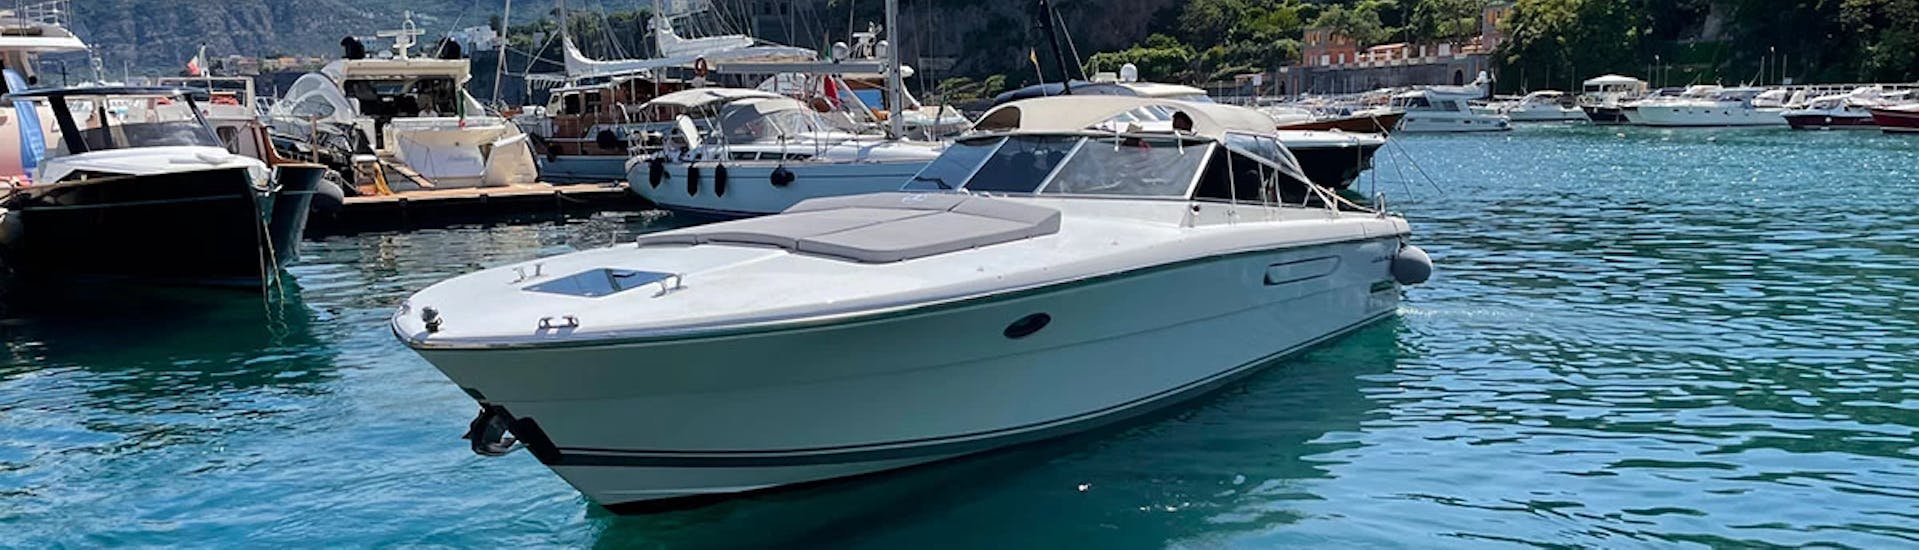 El barco Itama 38, uno de los dos barcos disponibles para el viaje en barco privado de Capri a Amalfi y Positano con Giuliani Charter Sorrento.